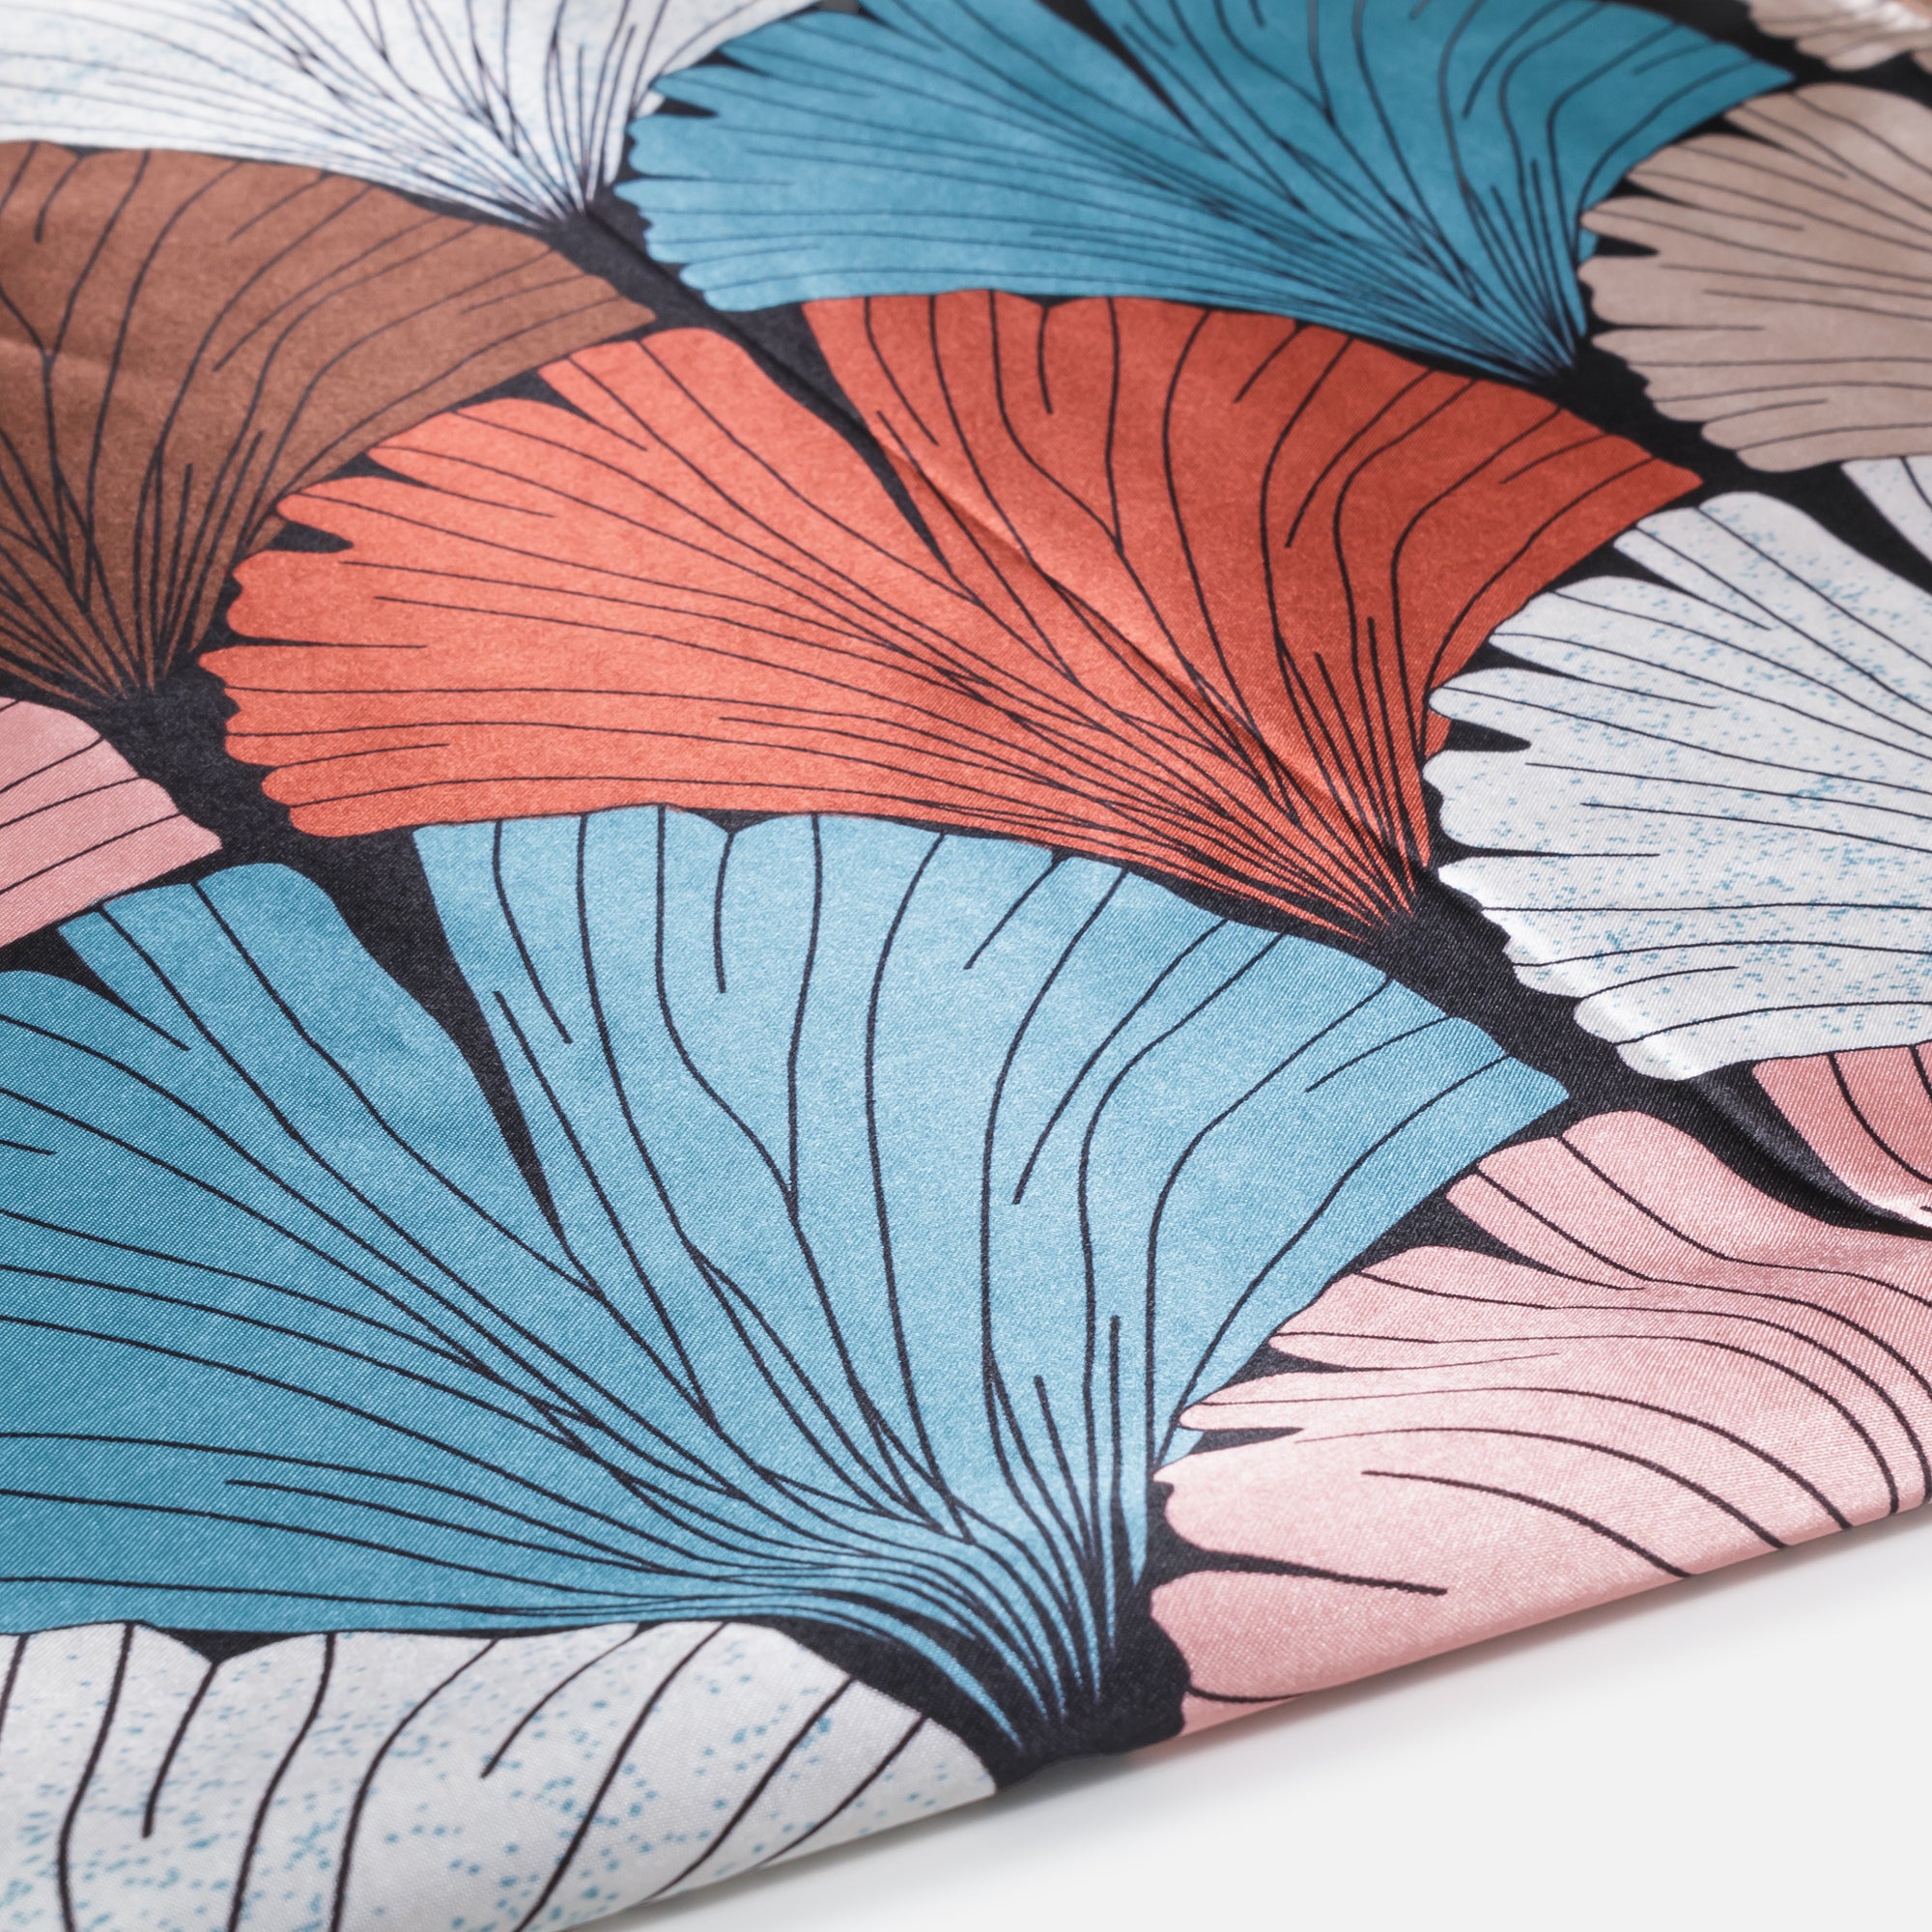 Lightweight silk effect shell print scarf